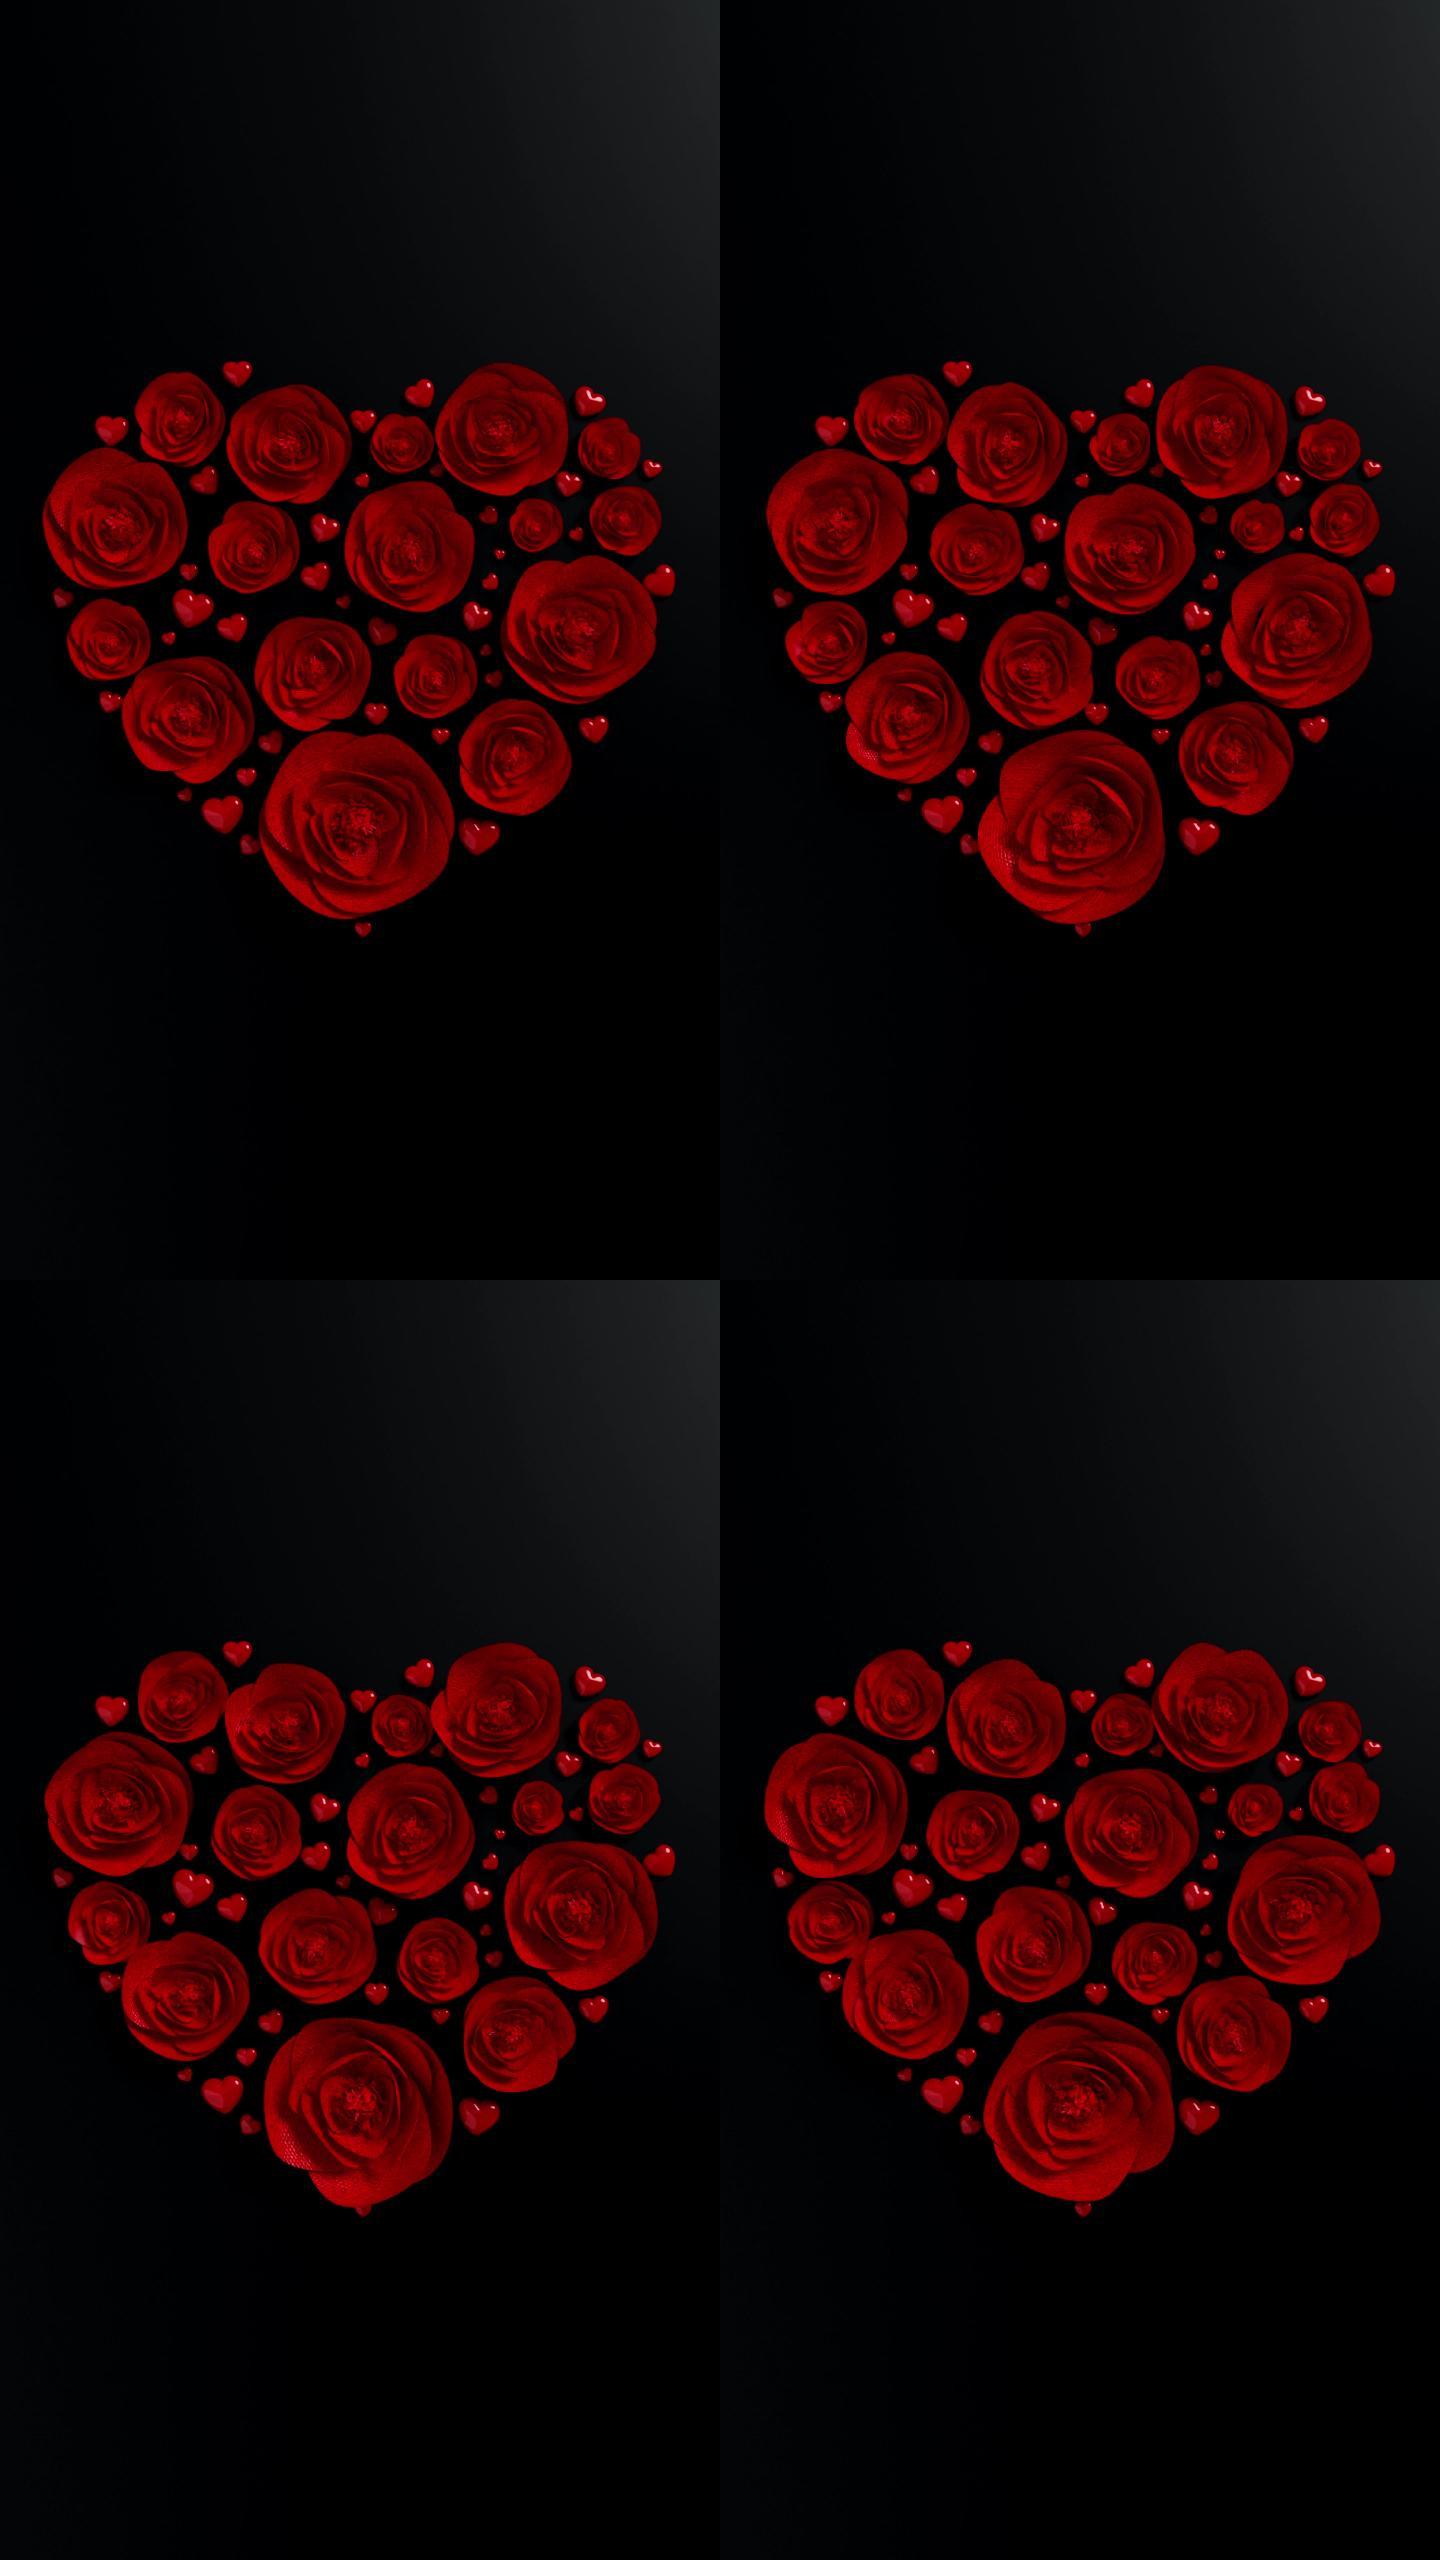 红玫瑰在黑暗背景下的心形构图